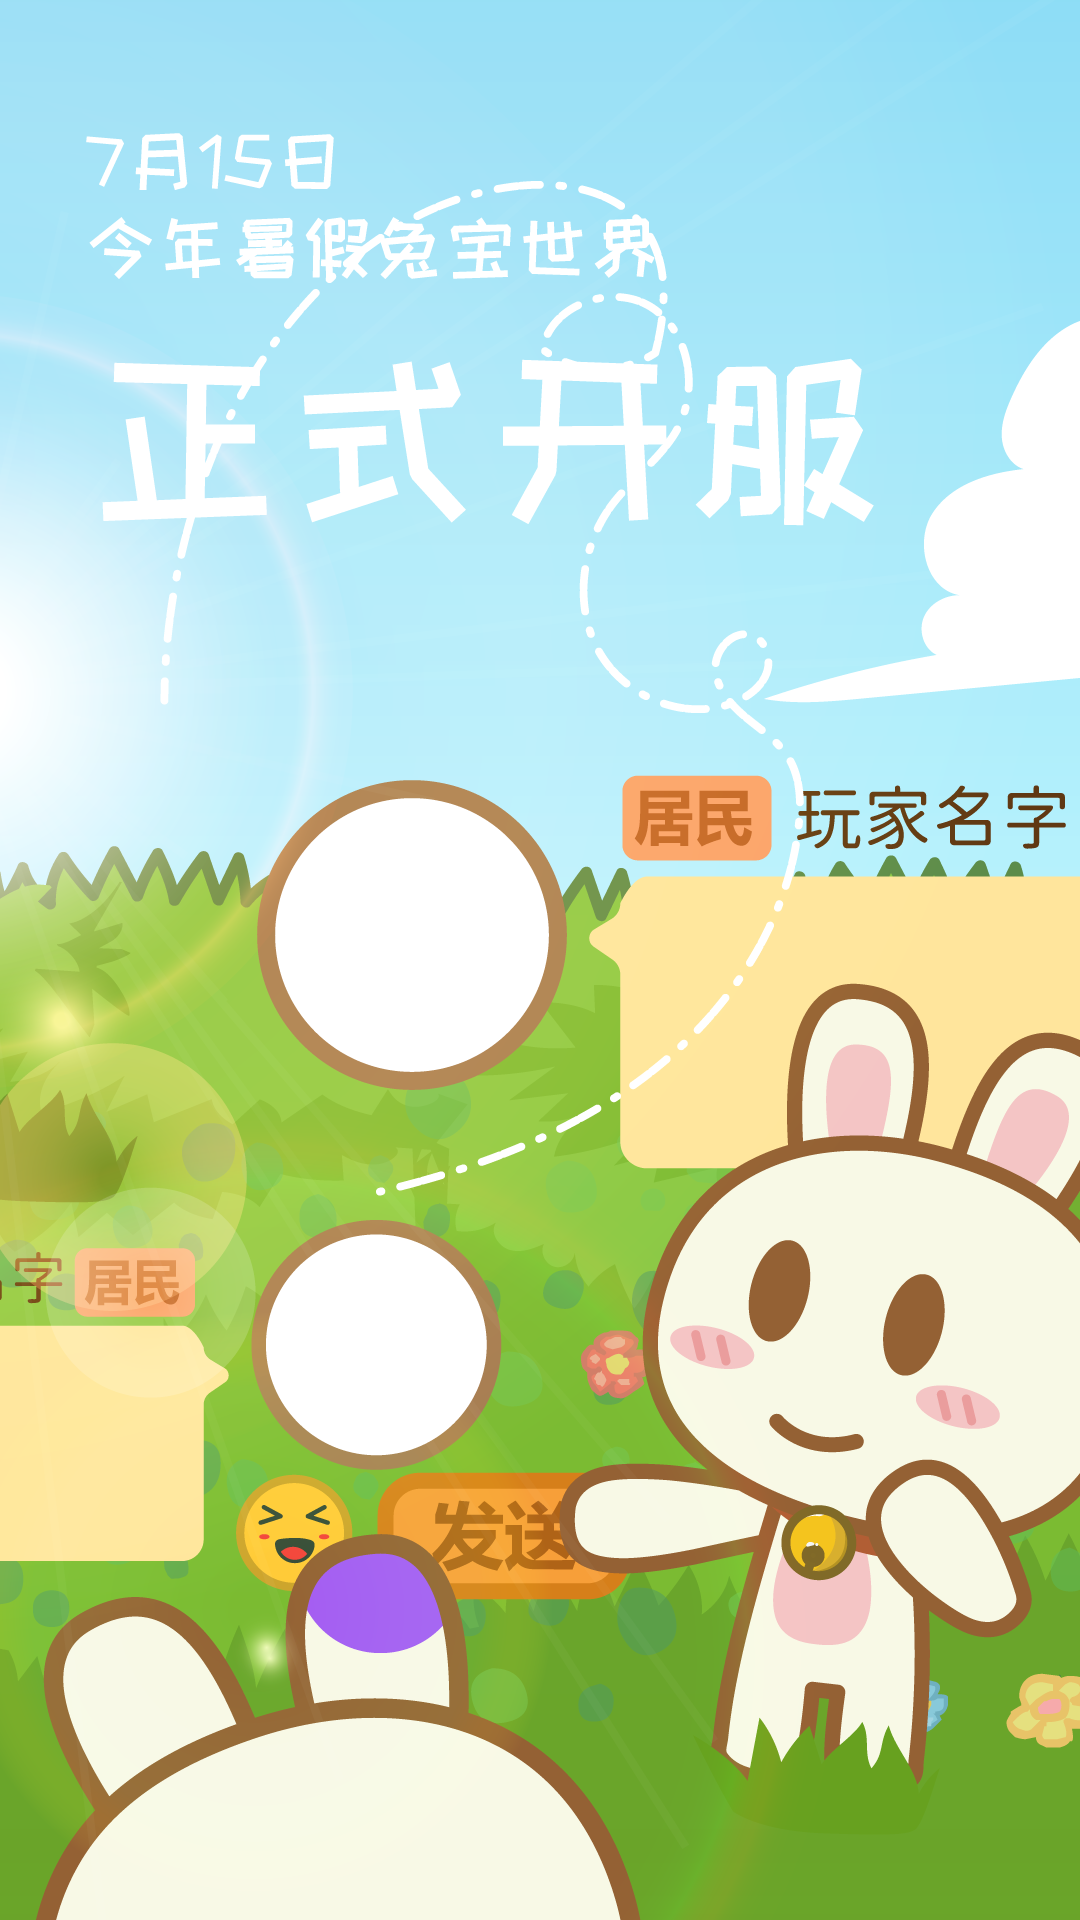 兔宝世界今年暑假正式开服